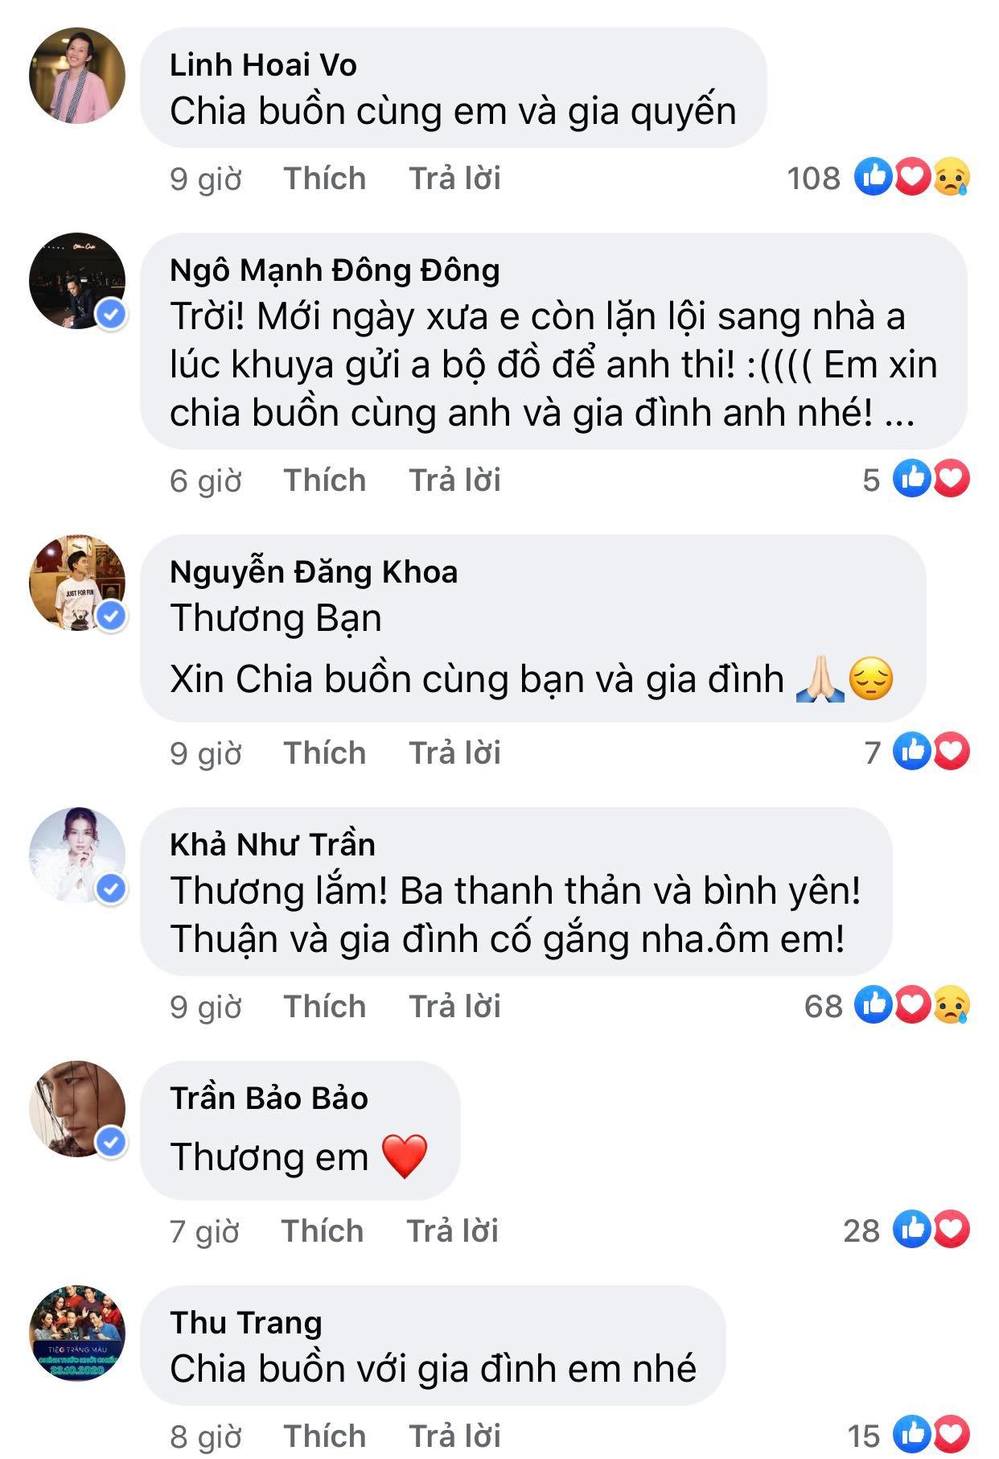  
Đồng nghiệp thân thiết chia buồn cùng gia đình Thuận Nguyễn. (Ảnh: Chụp màn hình)